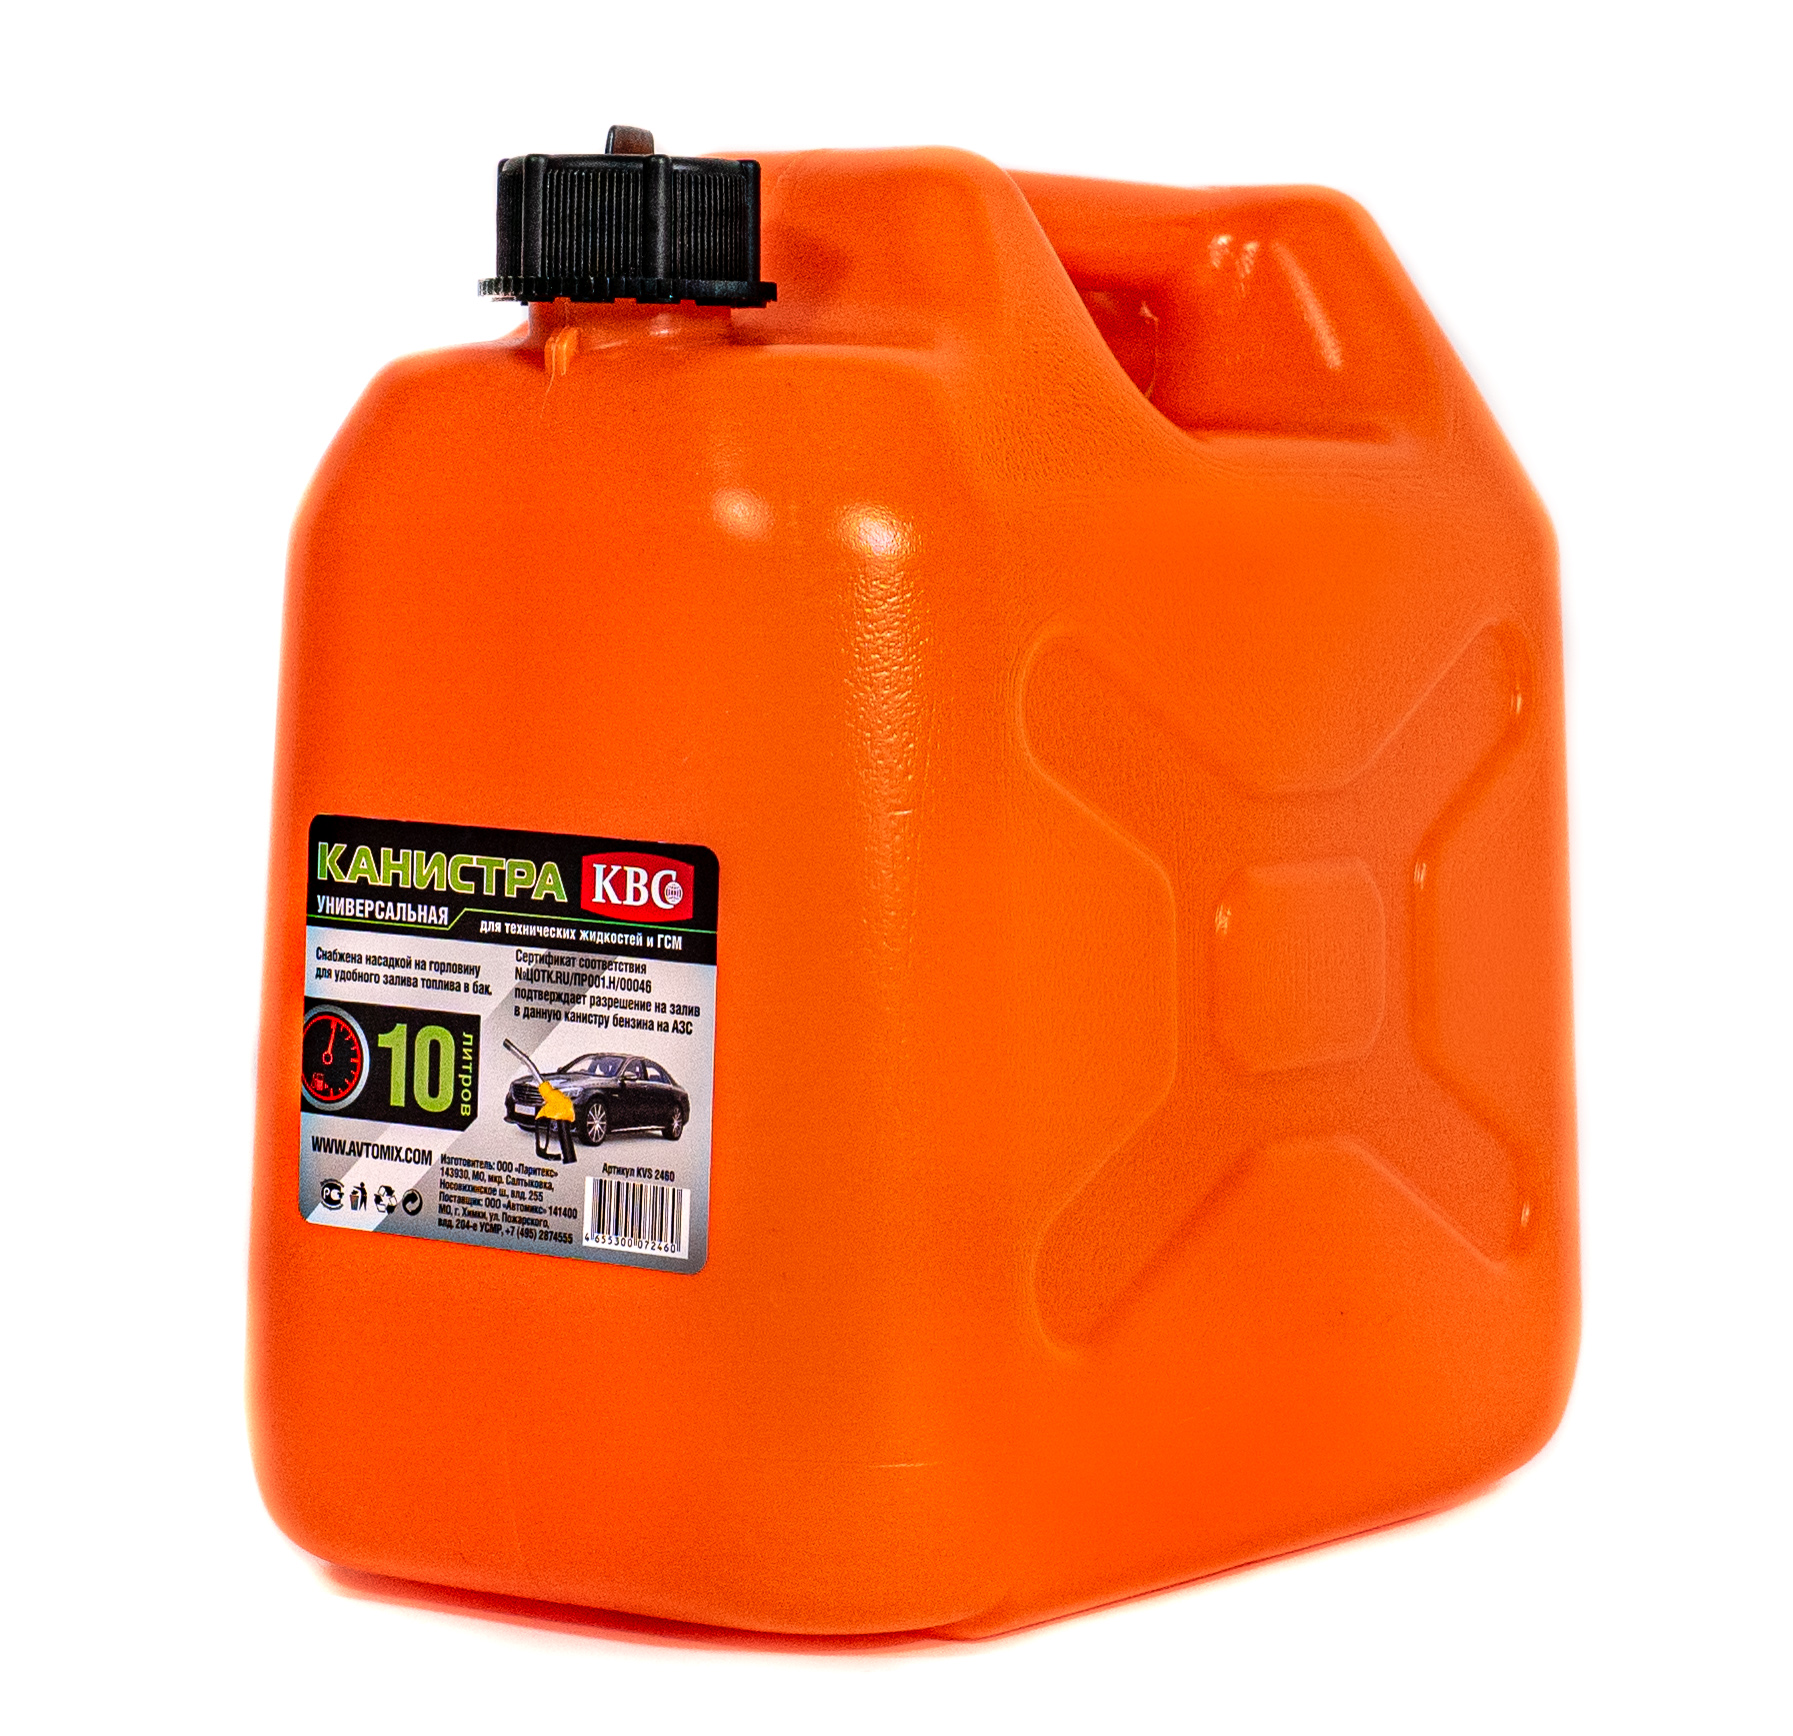 фото Канистра автомобильная квс пластиковая с лейкой travel kvs2460 оранжевая 10л